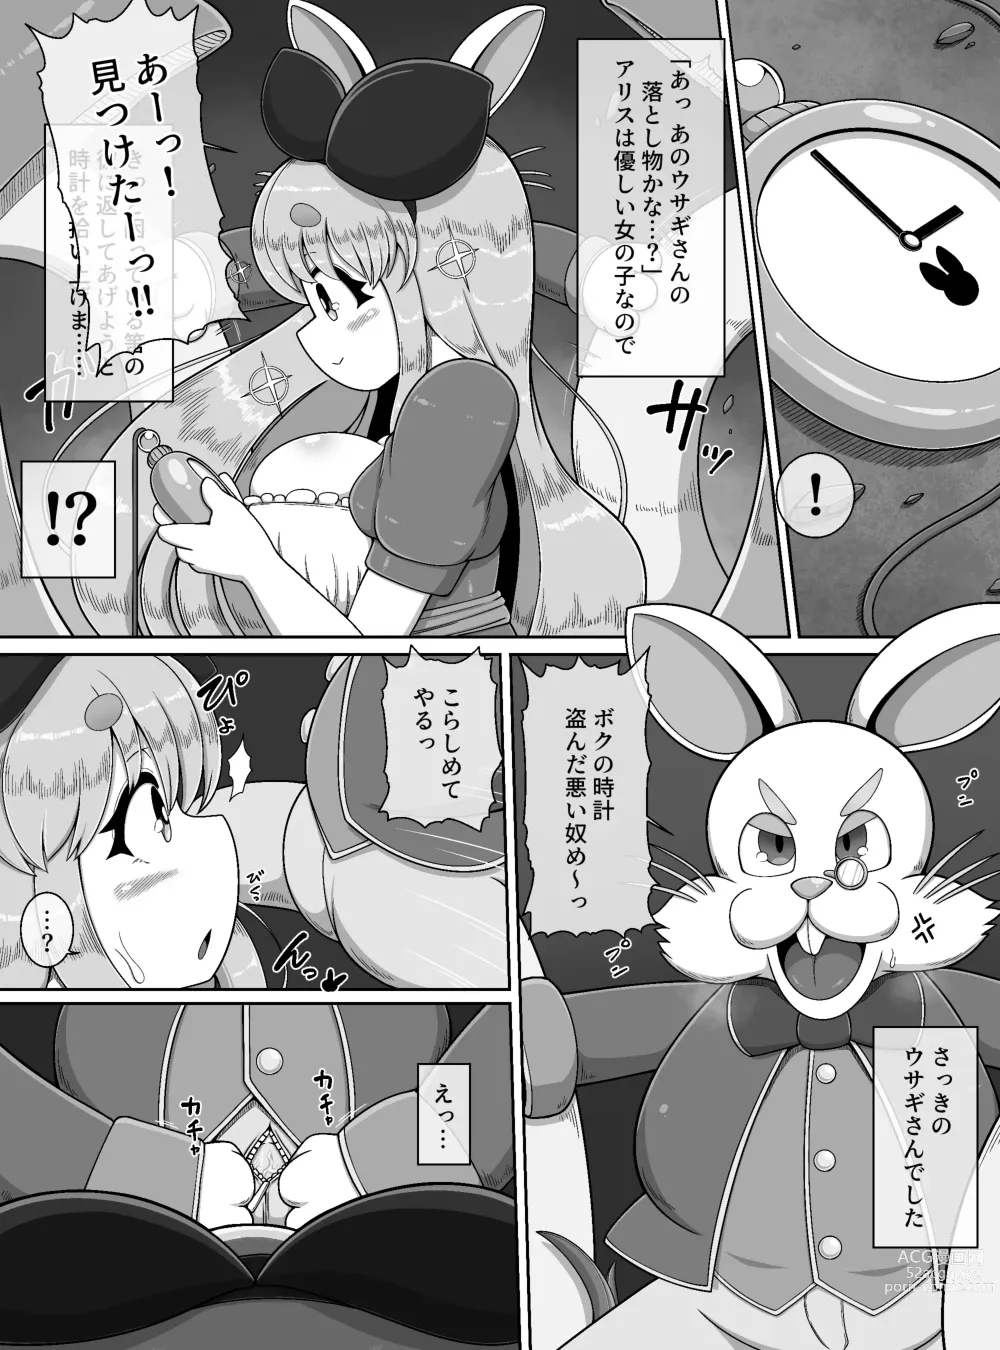 Page 3 of doujinshi Fushiginokuni de Arisu ga okasa reru dake no manga